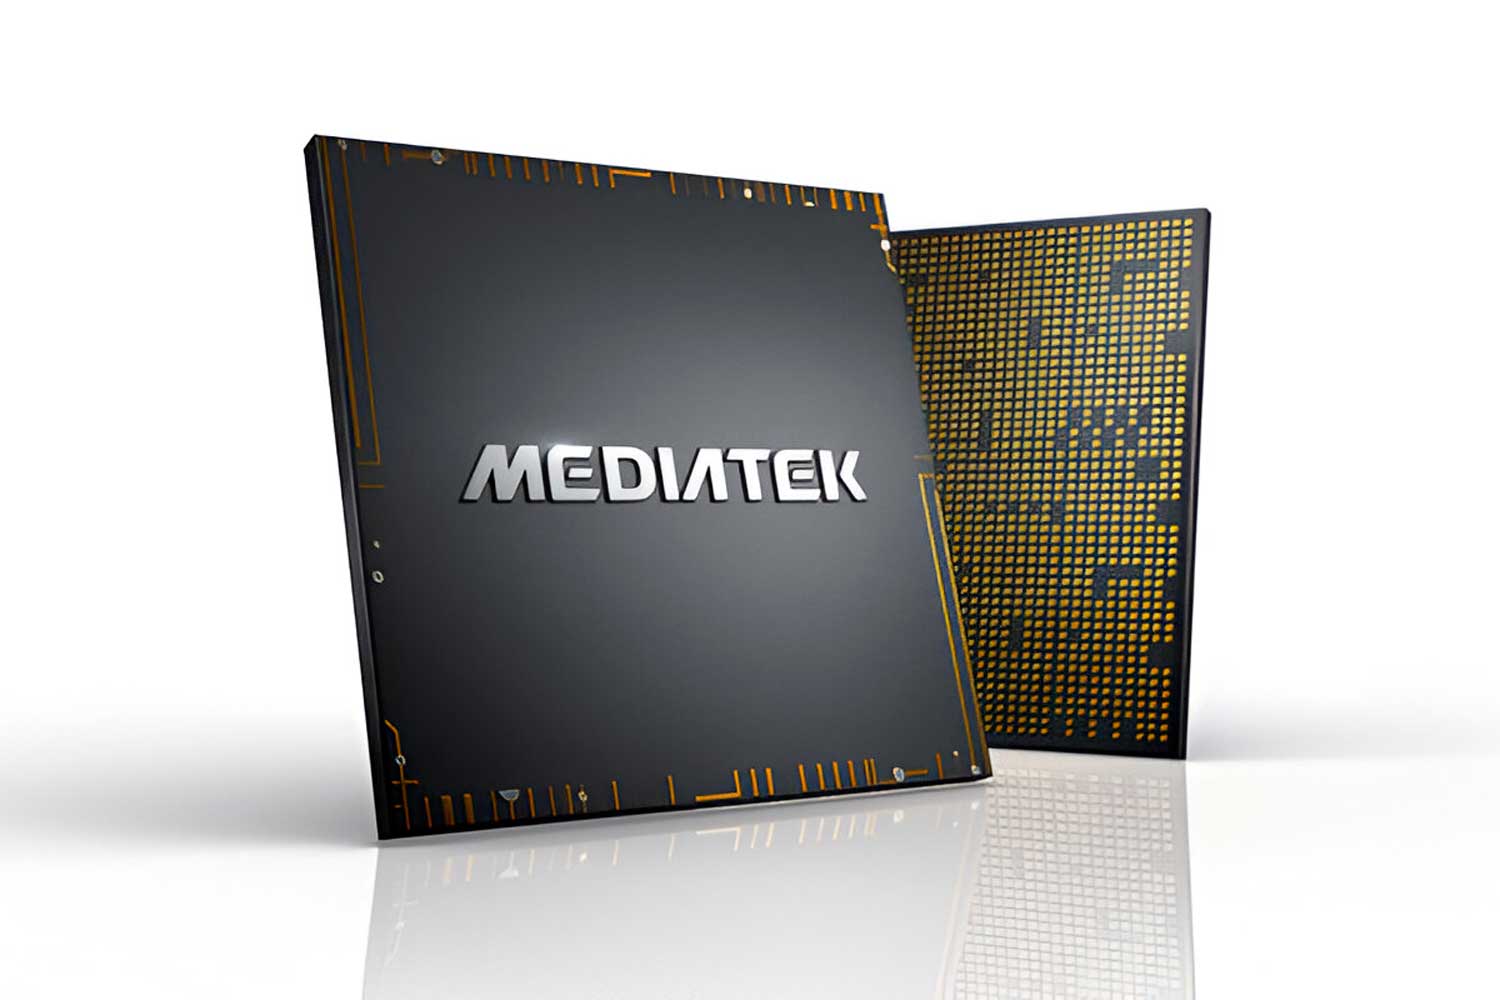 Mediatek Soc